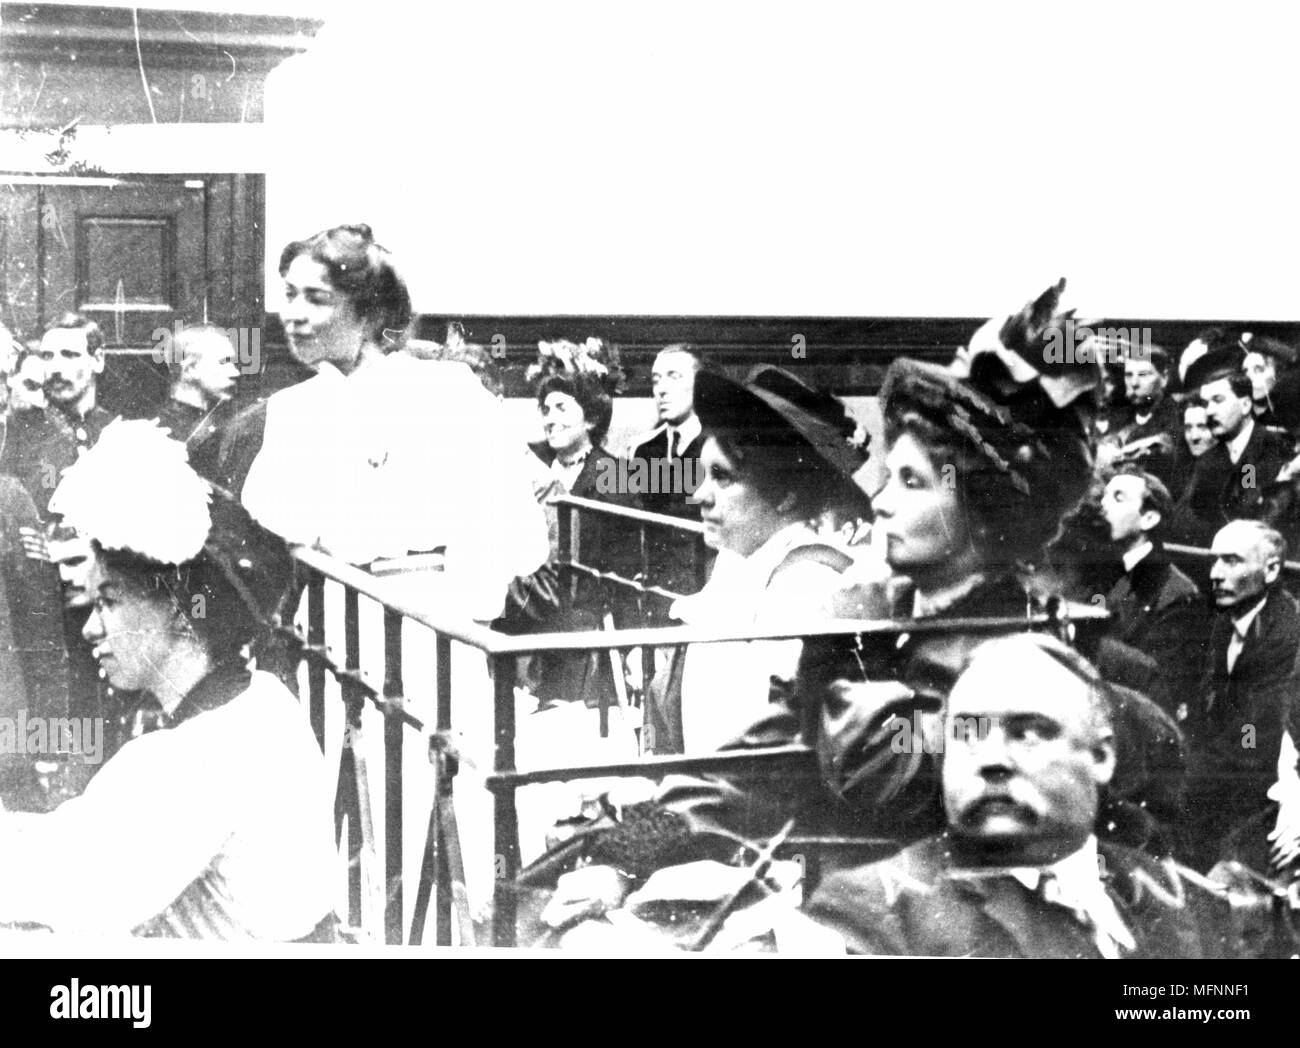 British movimento delle Suffragette. La signora Pankhurst (destra) Signora Flora Drummond e Pankhurst Cristabel nel dock accusato di cospirazione, 14 ottobre 1908 durante la lotta per le votazioni per le donne. Fotografia. Foto Stock